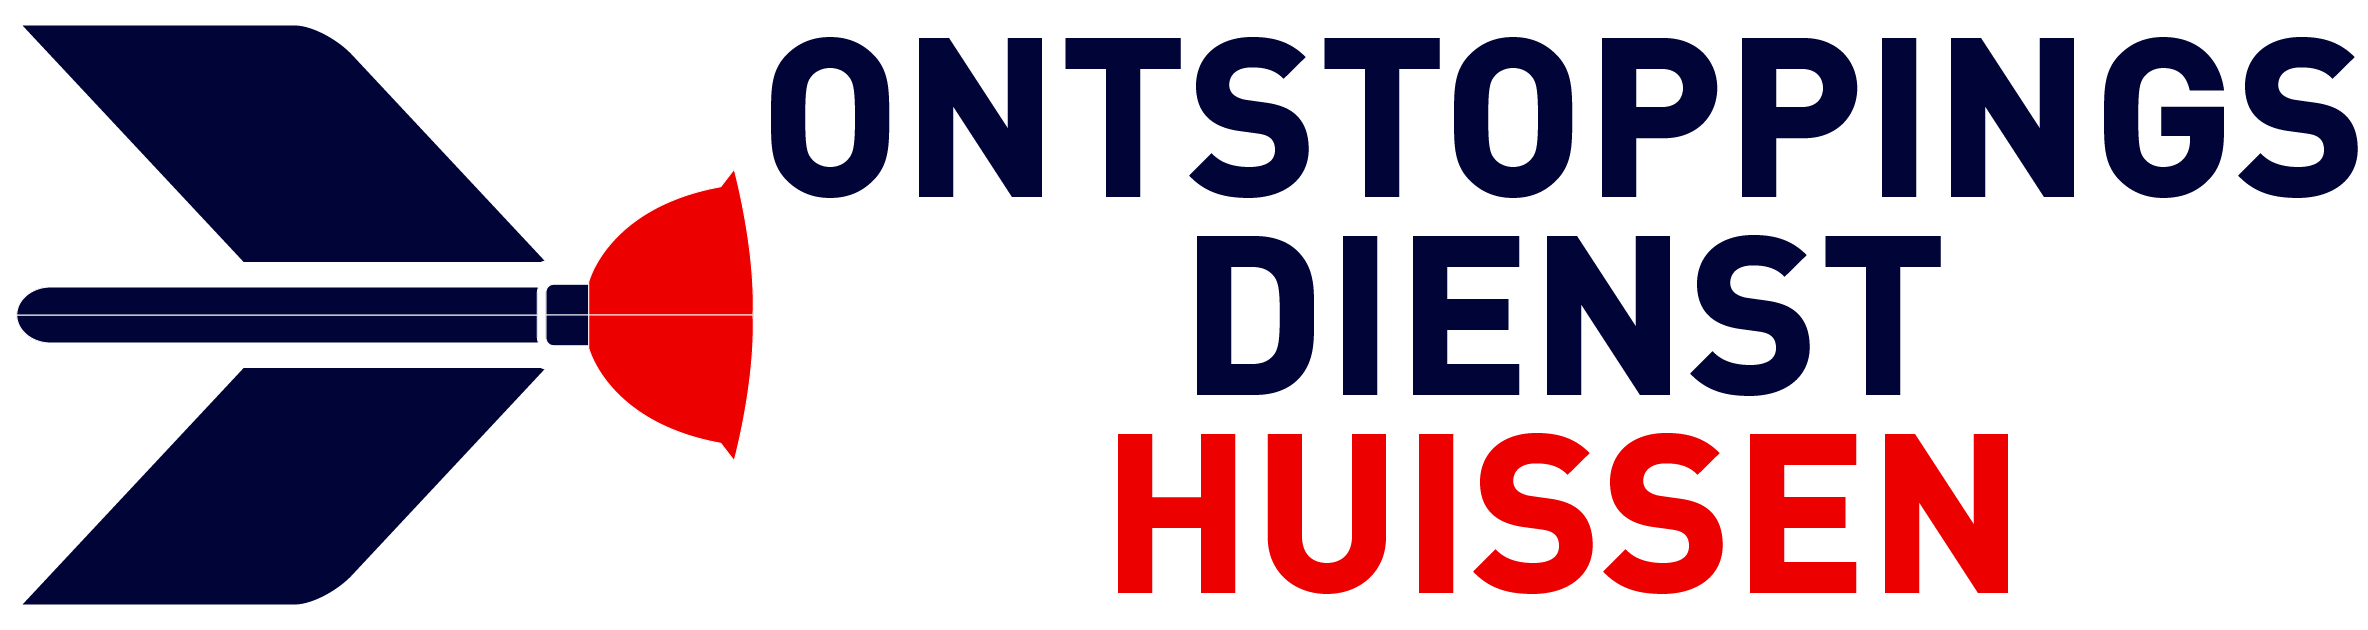 Ontstoppingsdienst Huissen logo